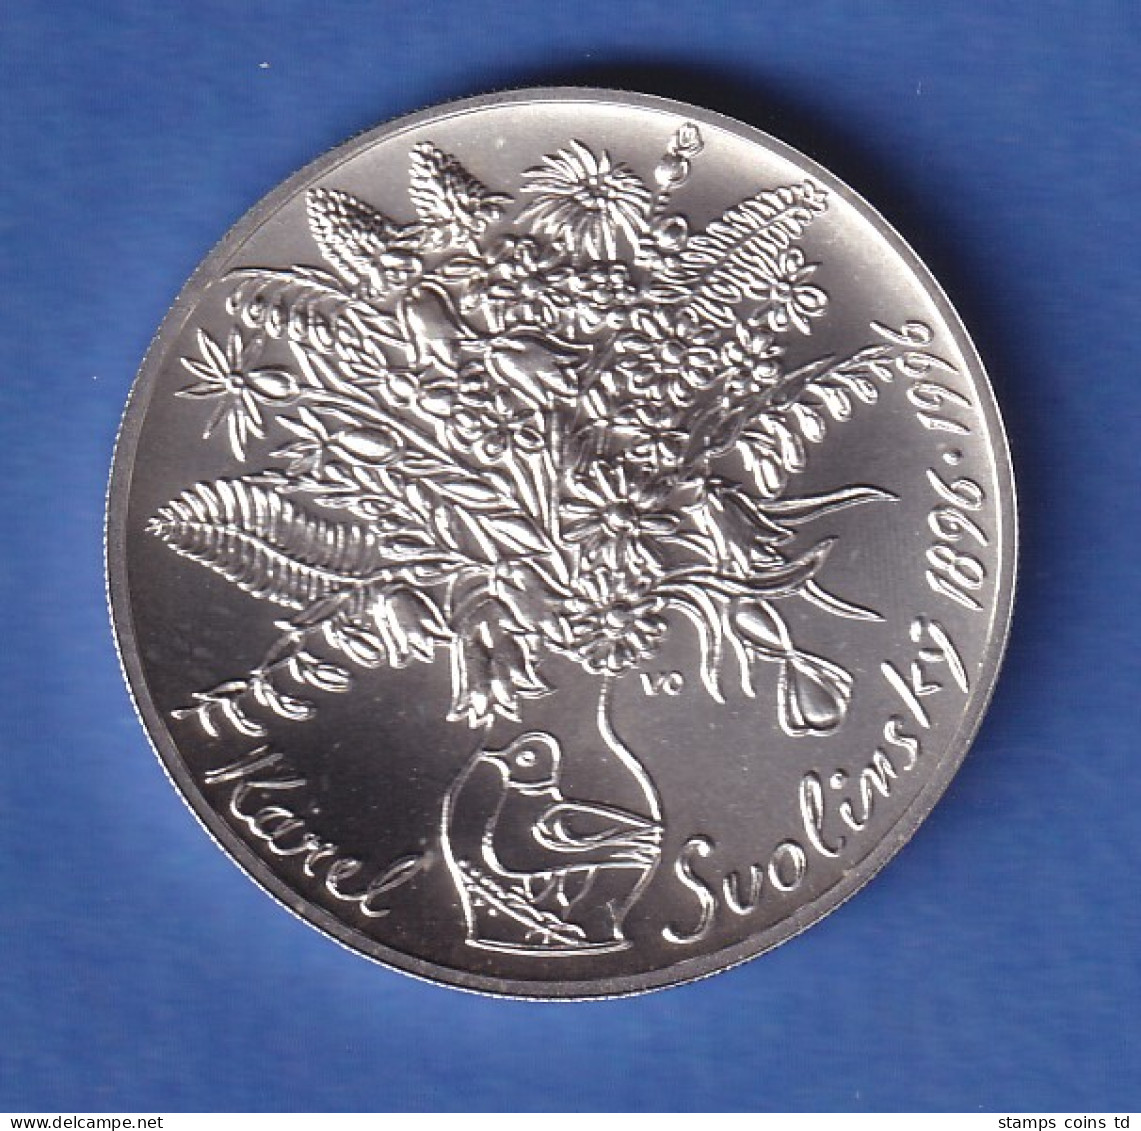 Tschechien 1996 Silbermünze 200 Kronen 100. Geburtstag Von Karel Svolinský Stg - Tschechische Rep.